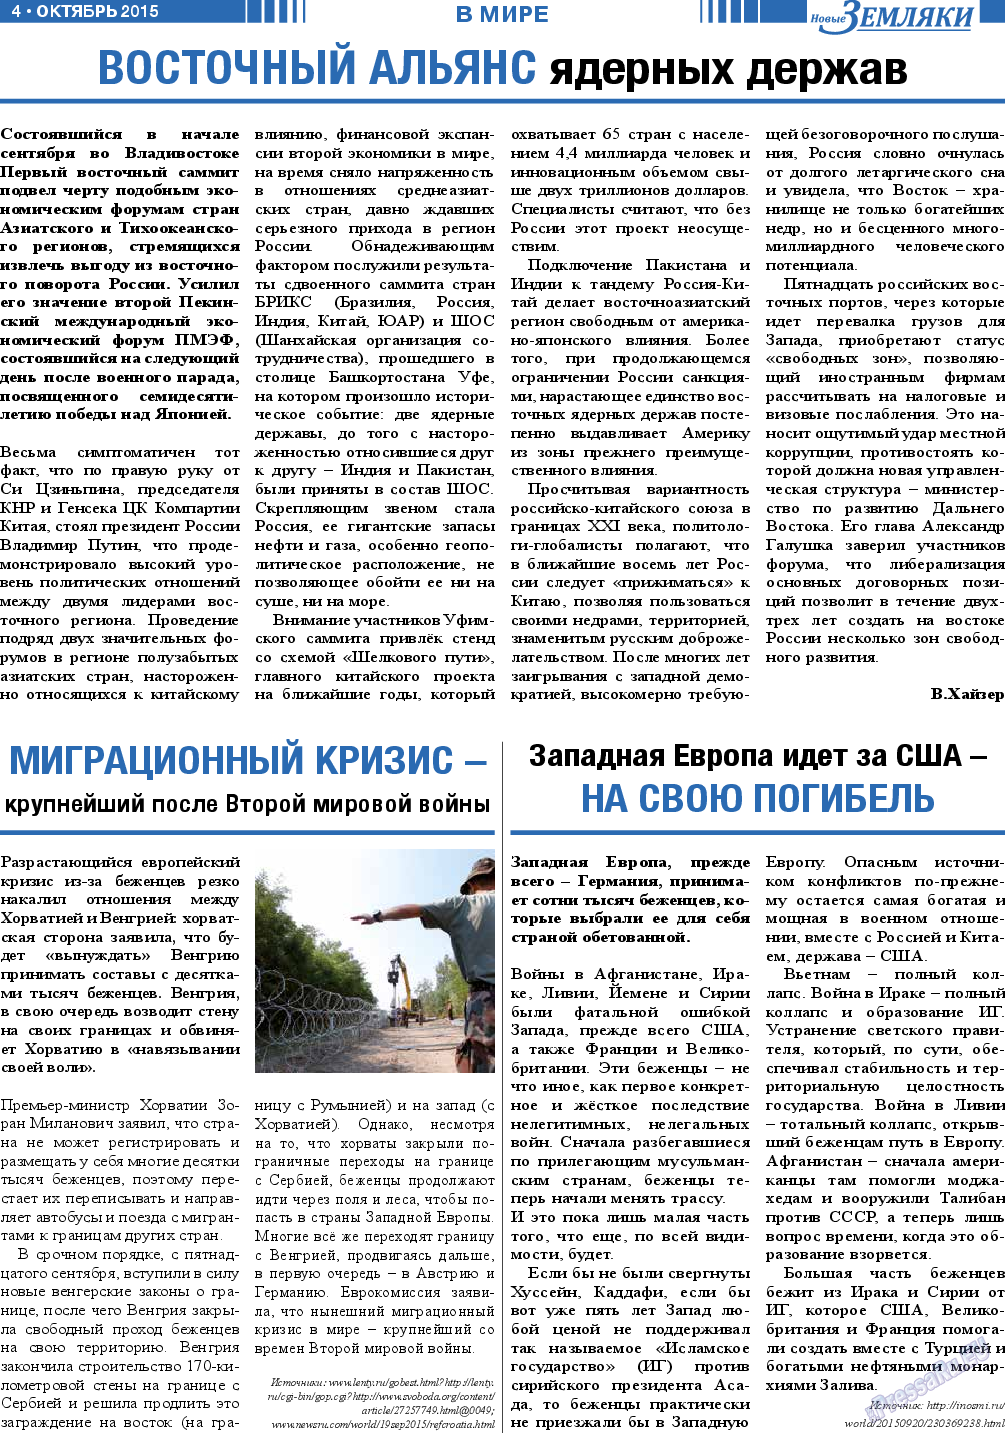 Новые Земляки, газета. 2015 №10 стр.4